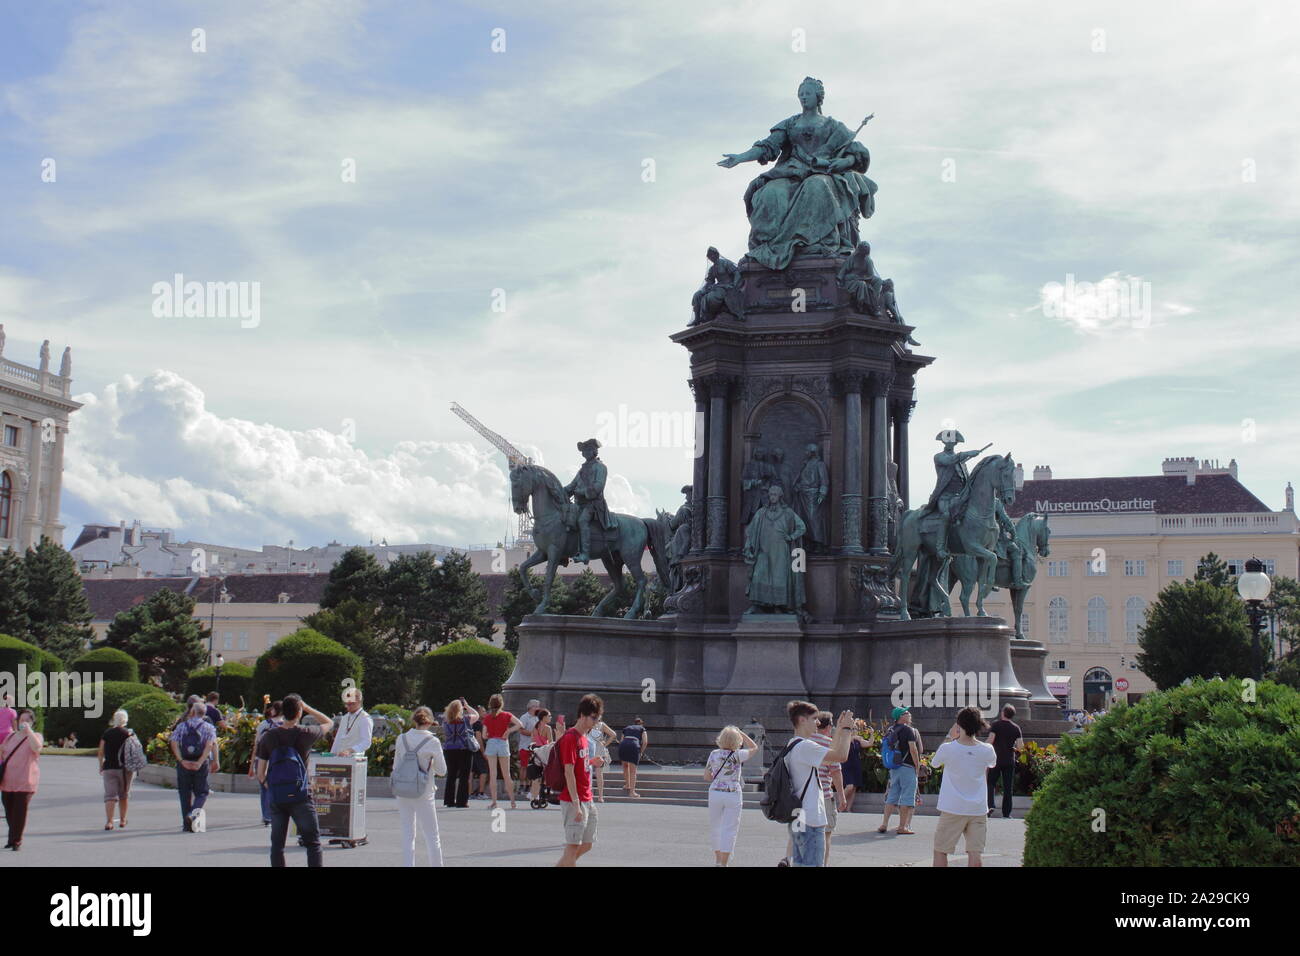 Maria Theresien Platz, Wien City Center, nel parco di fronte il Palazzo di Hofburg (principessa Sissi castello) Foto Stock